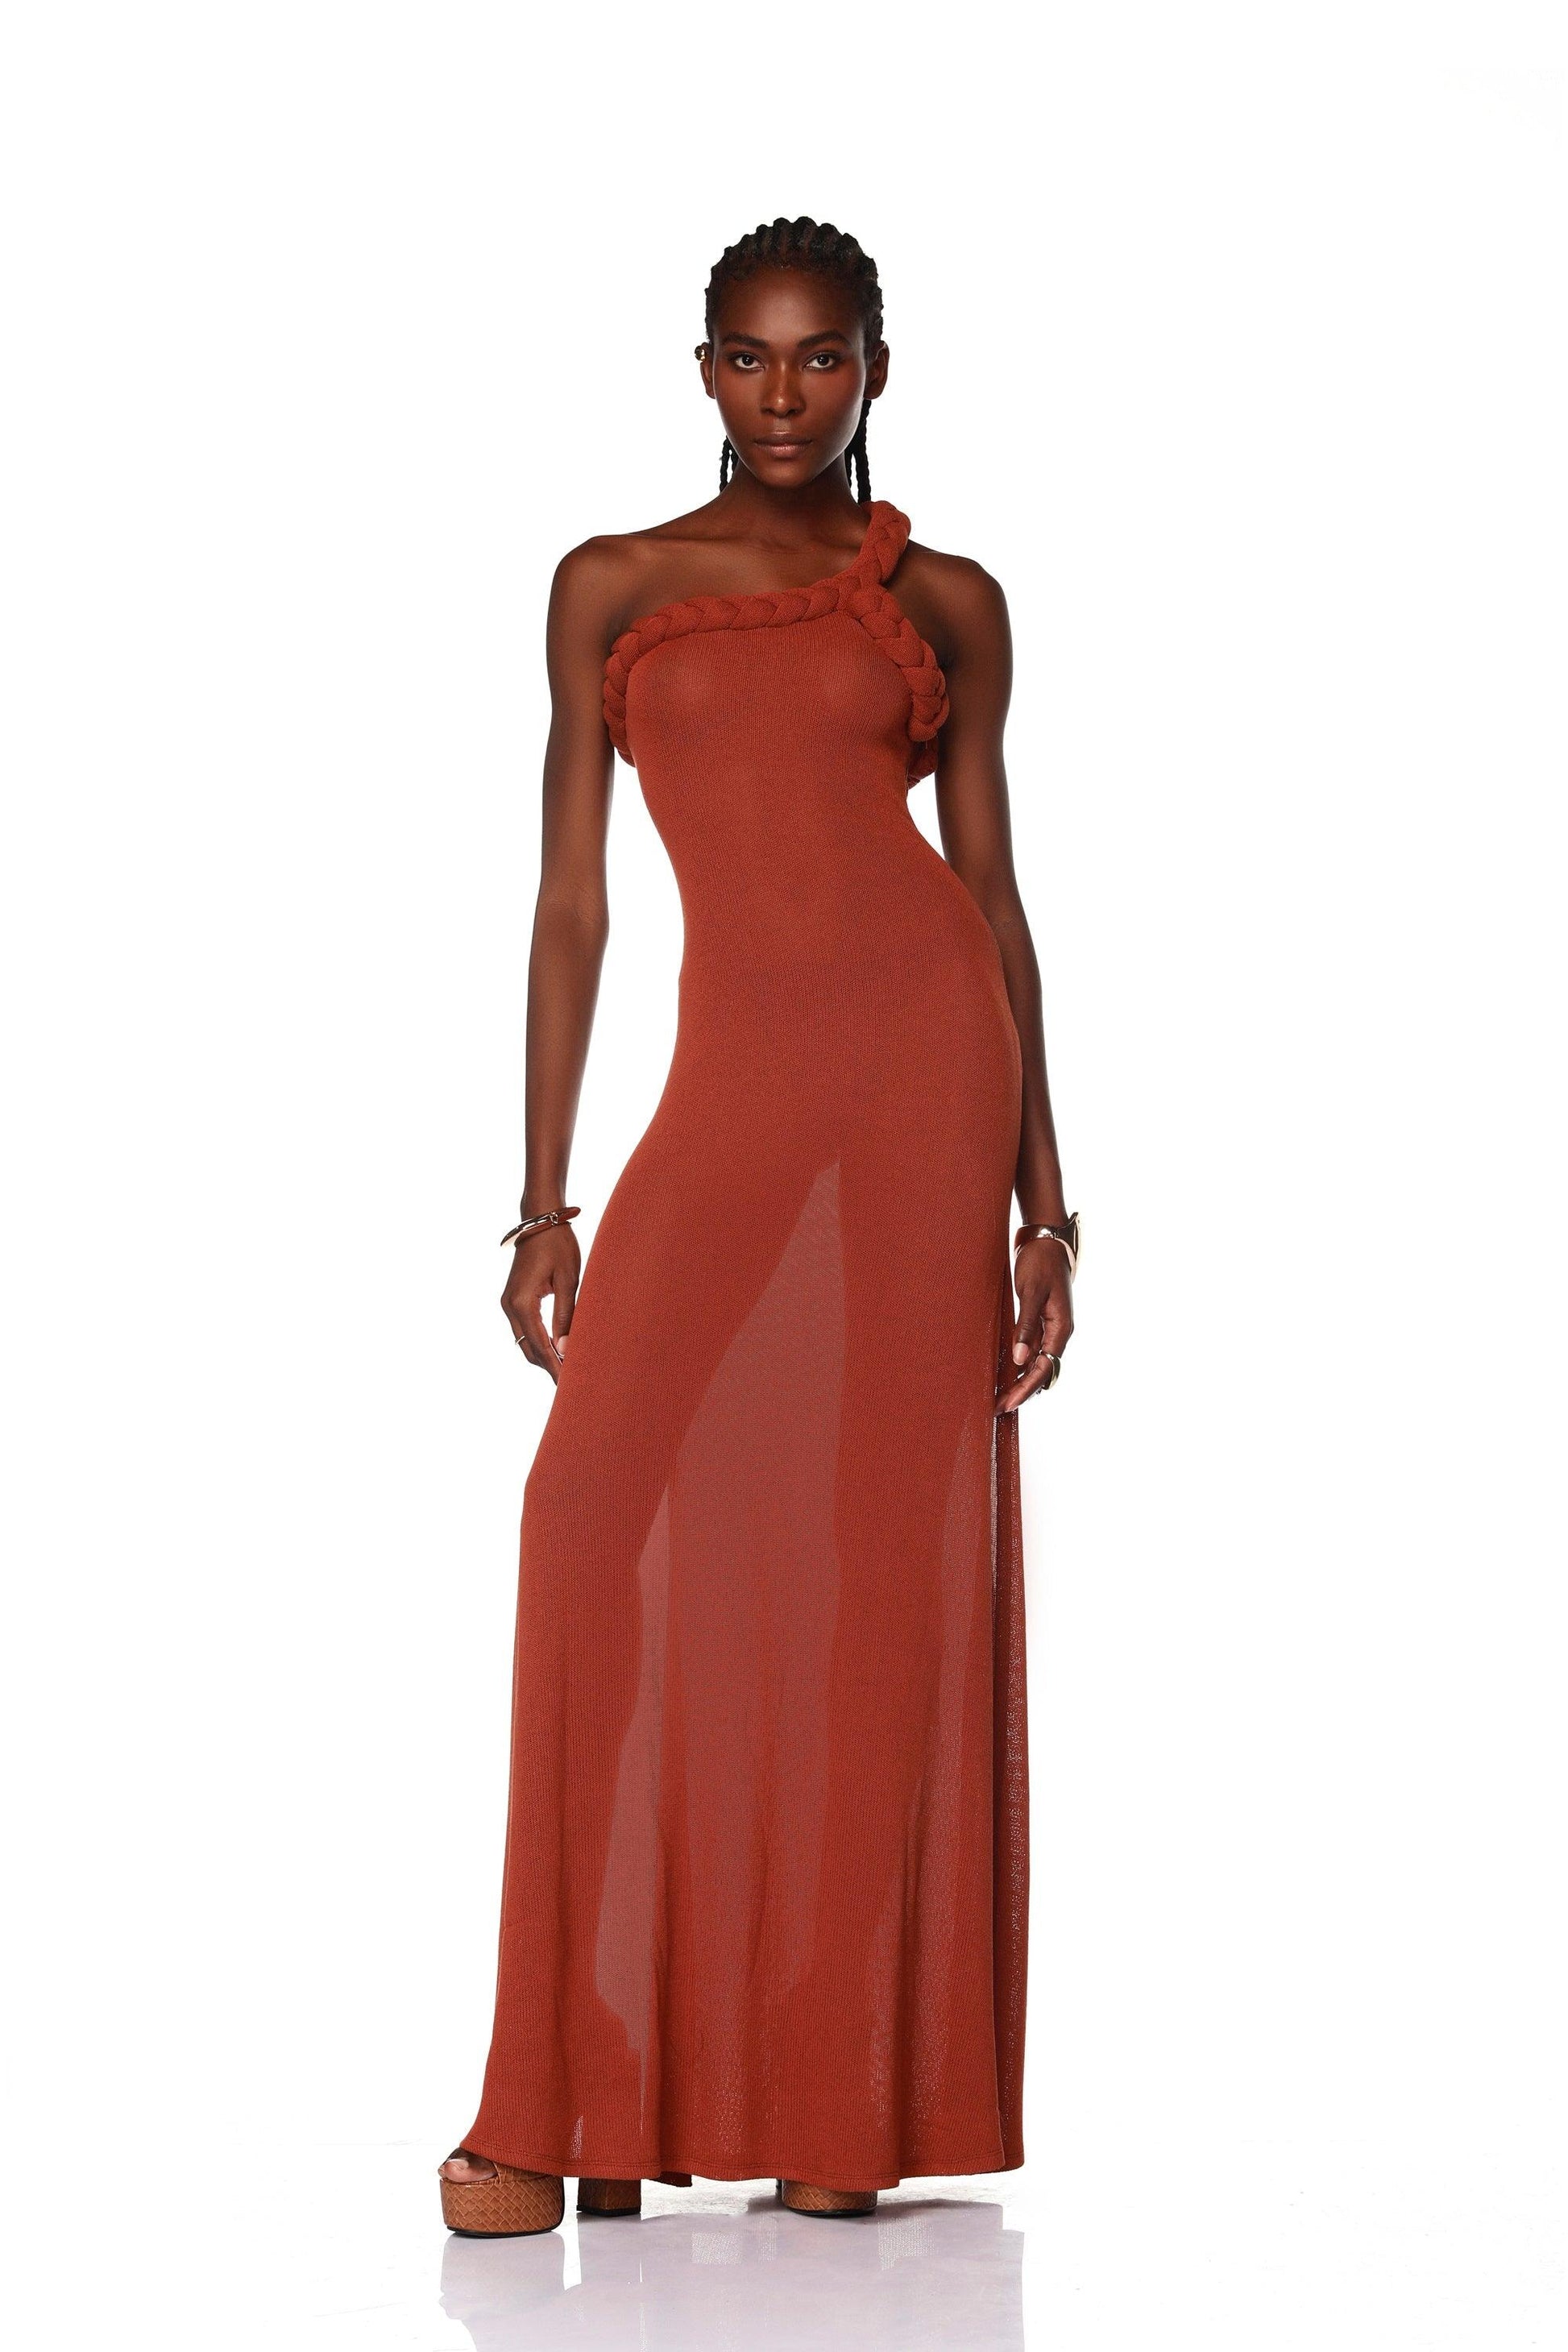 Dalia One Shoulder Copper Gown - Pre Order - BRONX AND BANCO